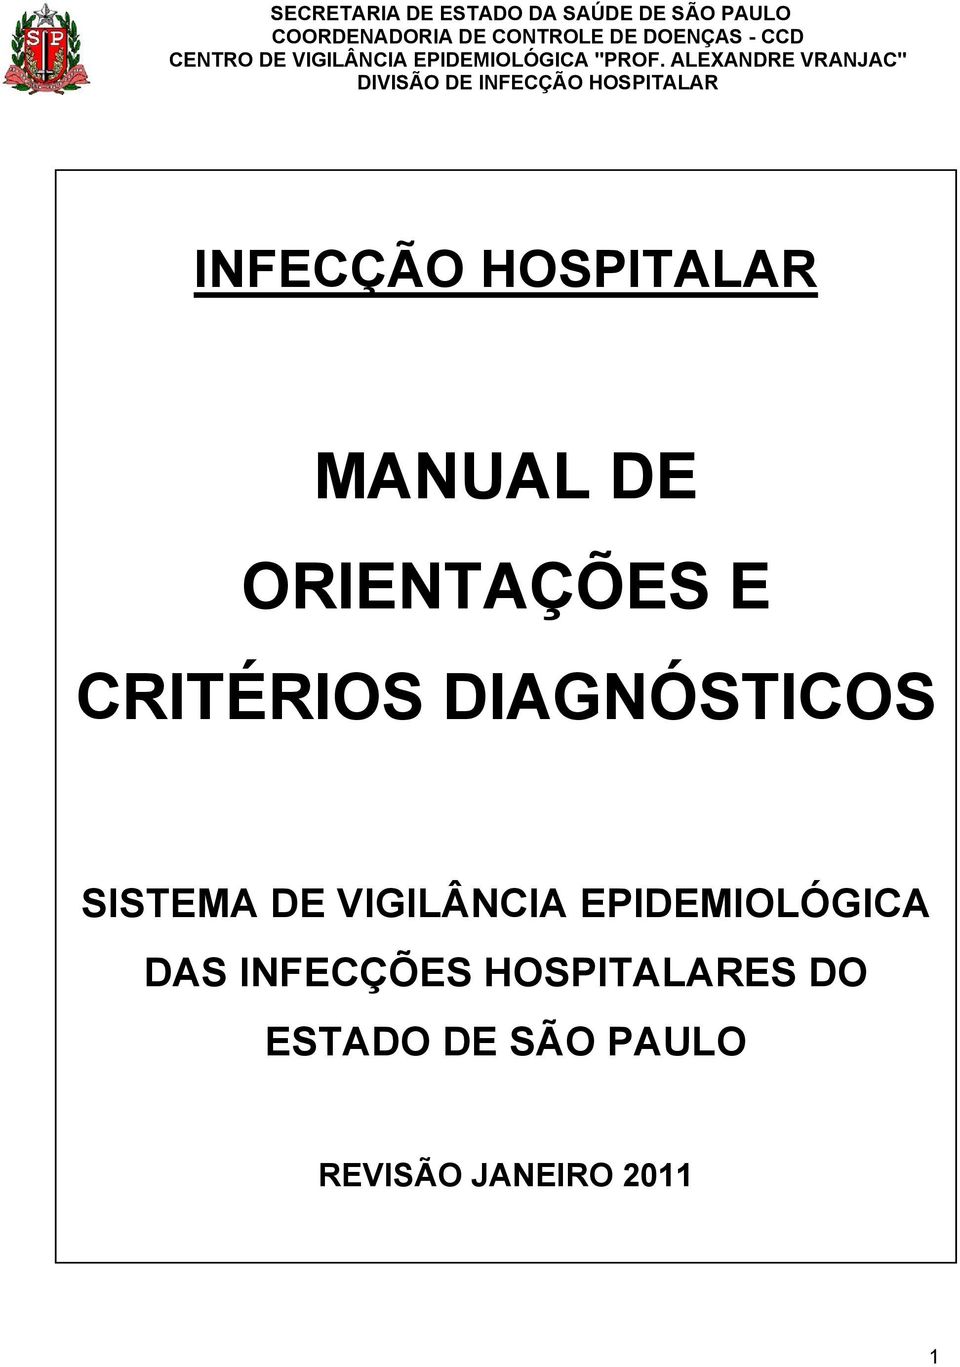 ALEXANDRE VRANJAC" DIVISÃO DE INFECÇÃO HOSPITALAR INFECÇÃO HOSPITALAR MANUAL DE